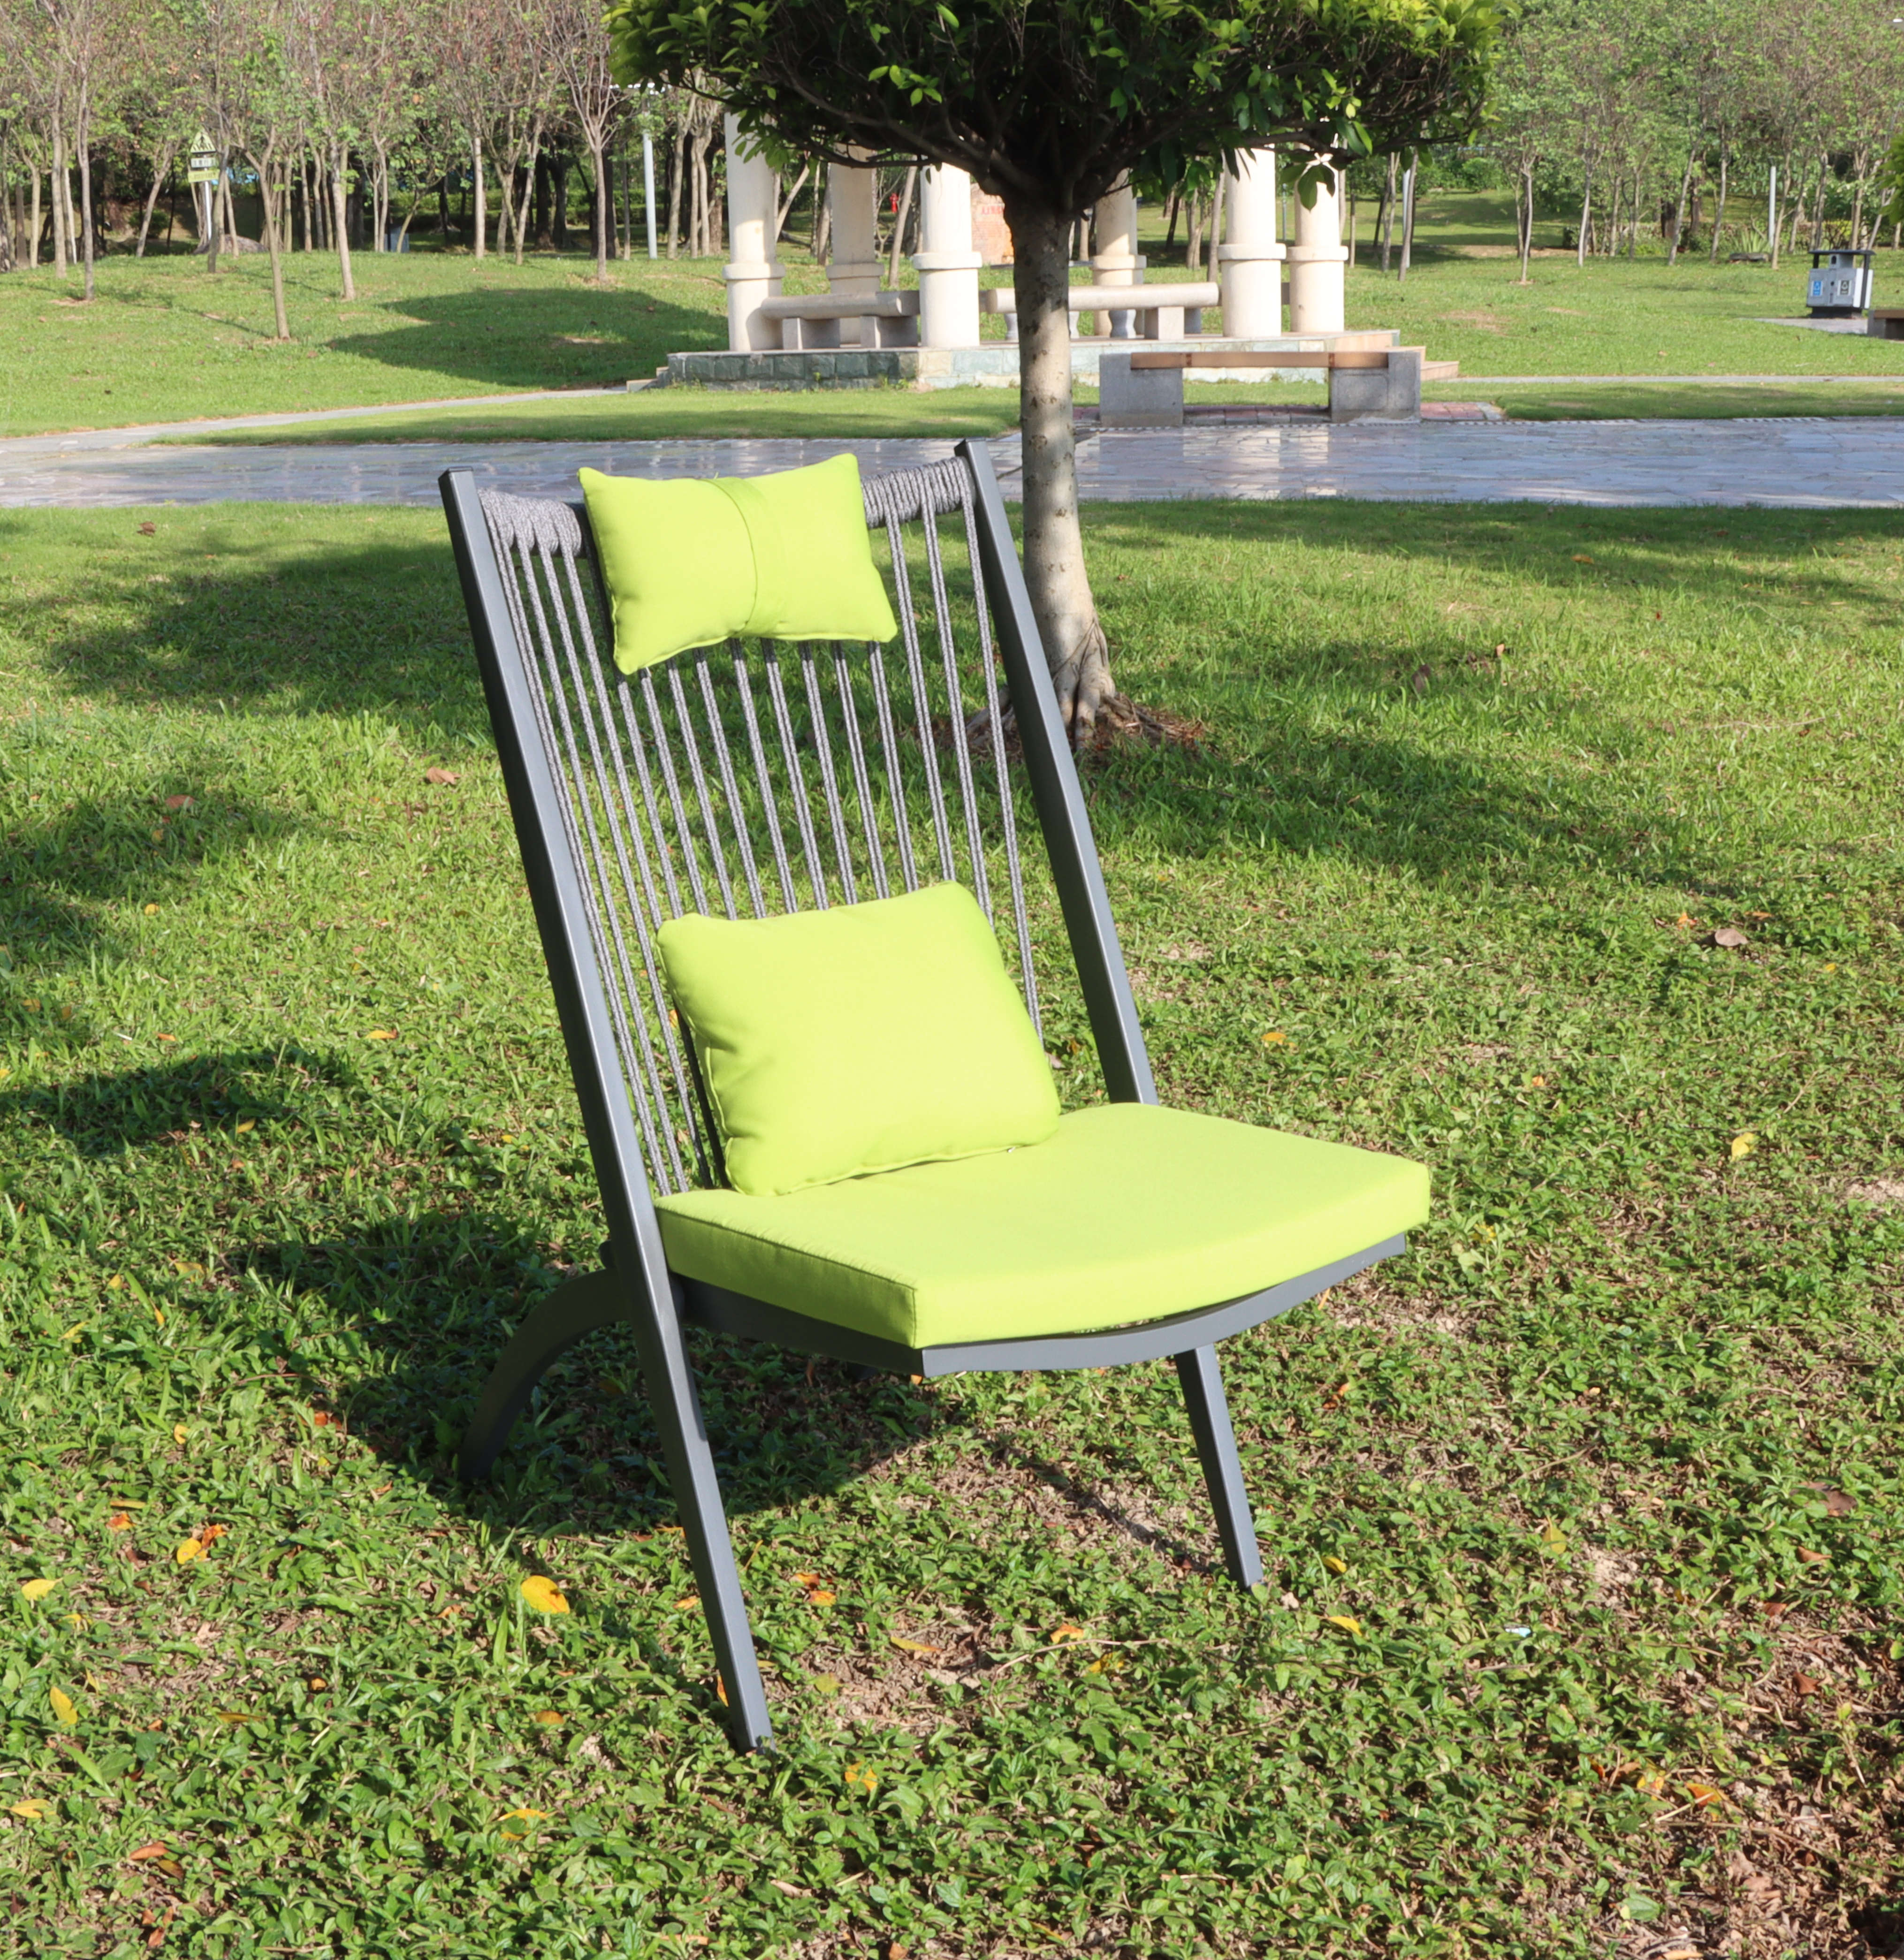 Comprar conjunto de sillas plegables de aluminio al aire libre, conjunto de sillas plegables de aluminio al aire libre Precios, conjunto de sillas plegables de aluminio al aire libre Marcas, conjunto de sillas plegables de aluminio al aire libre Fabricante, conjunto de sillas plegables de aluminio al aire libre Citas, conjunto de sillas plegables de aluminio al aire libre Empresa.